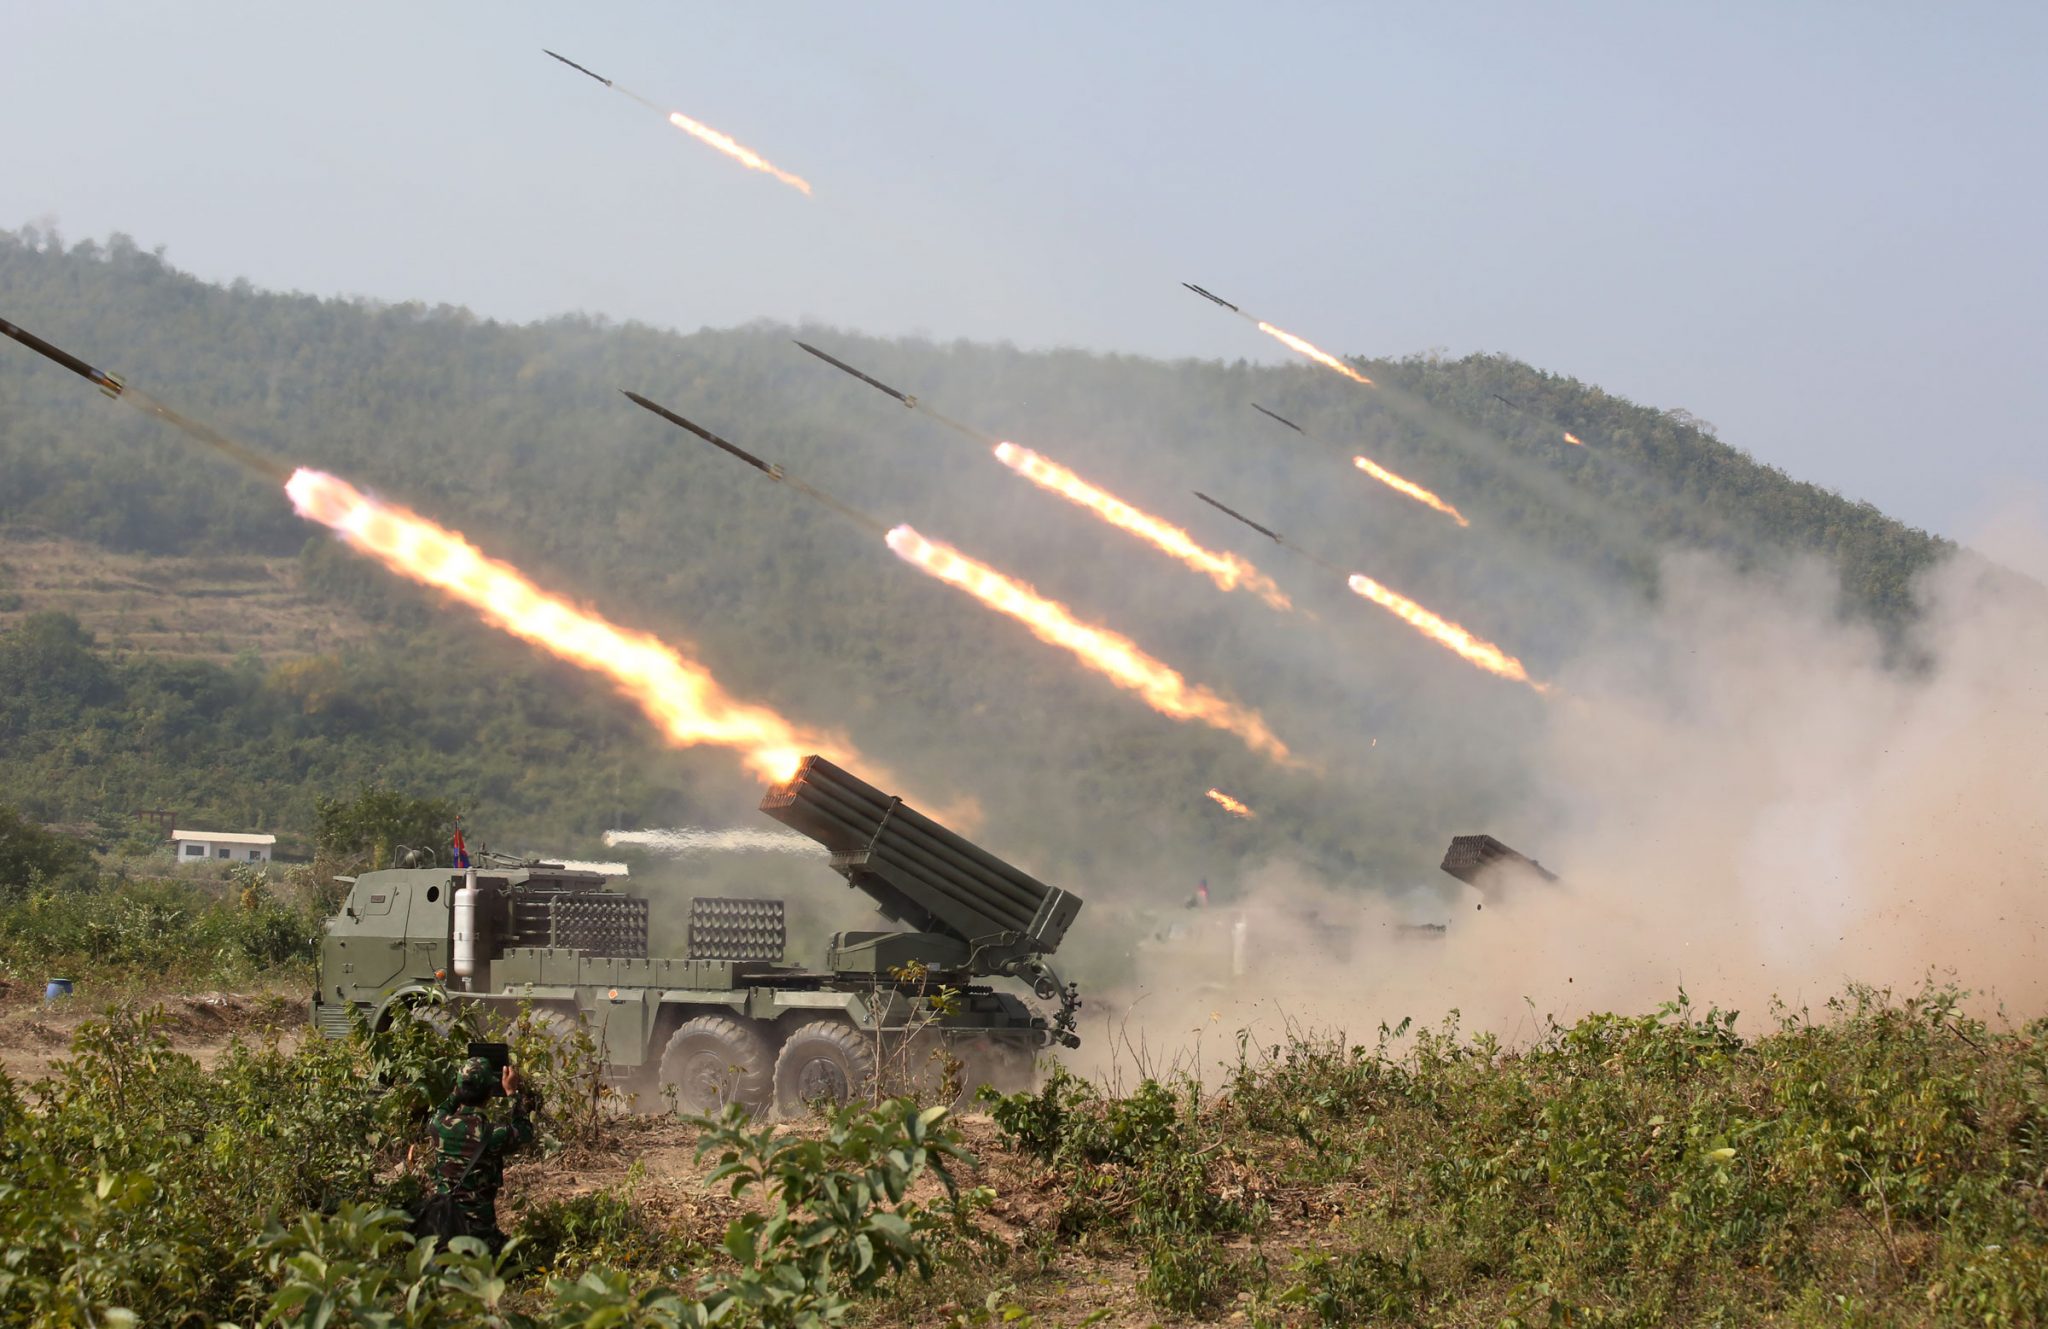 Verseranno! Le forze armate dell'Ucraina hanno già ricevuto i sistemi a razzo a lancio multiplo ceco RM-70